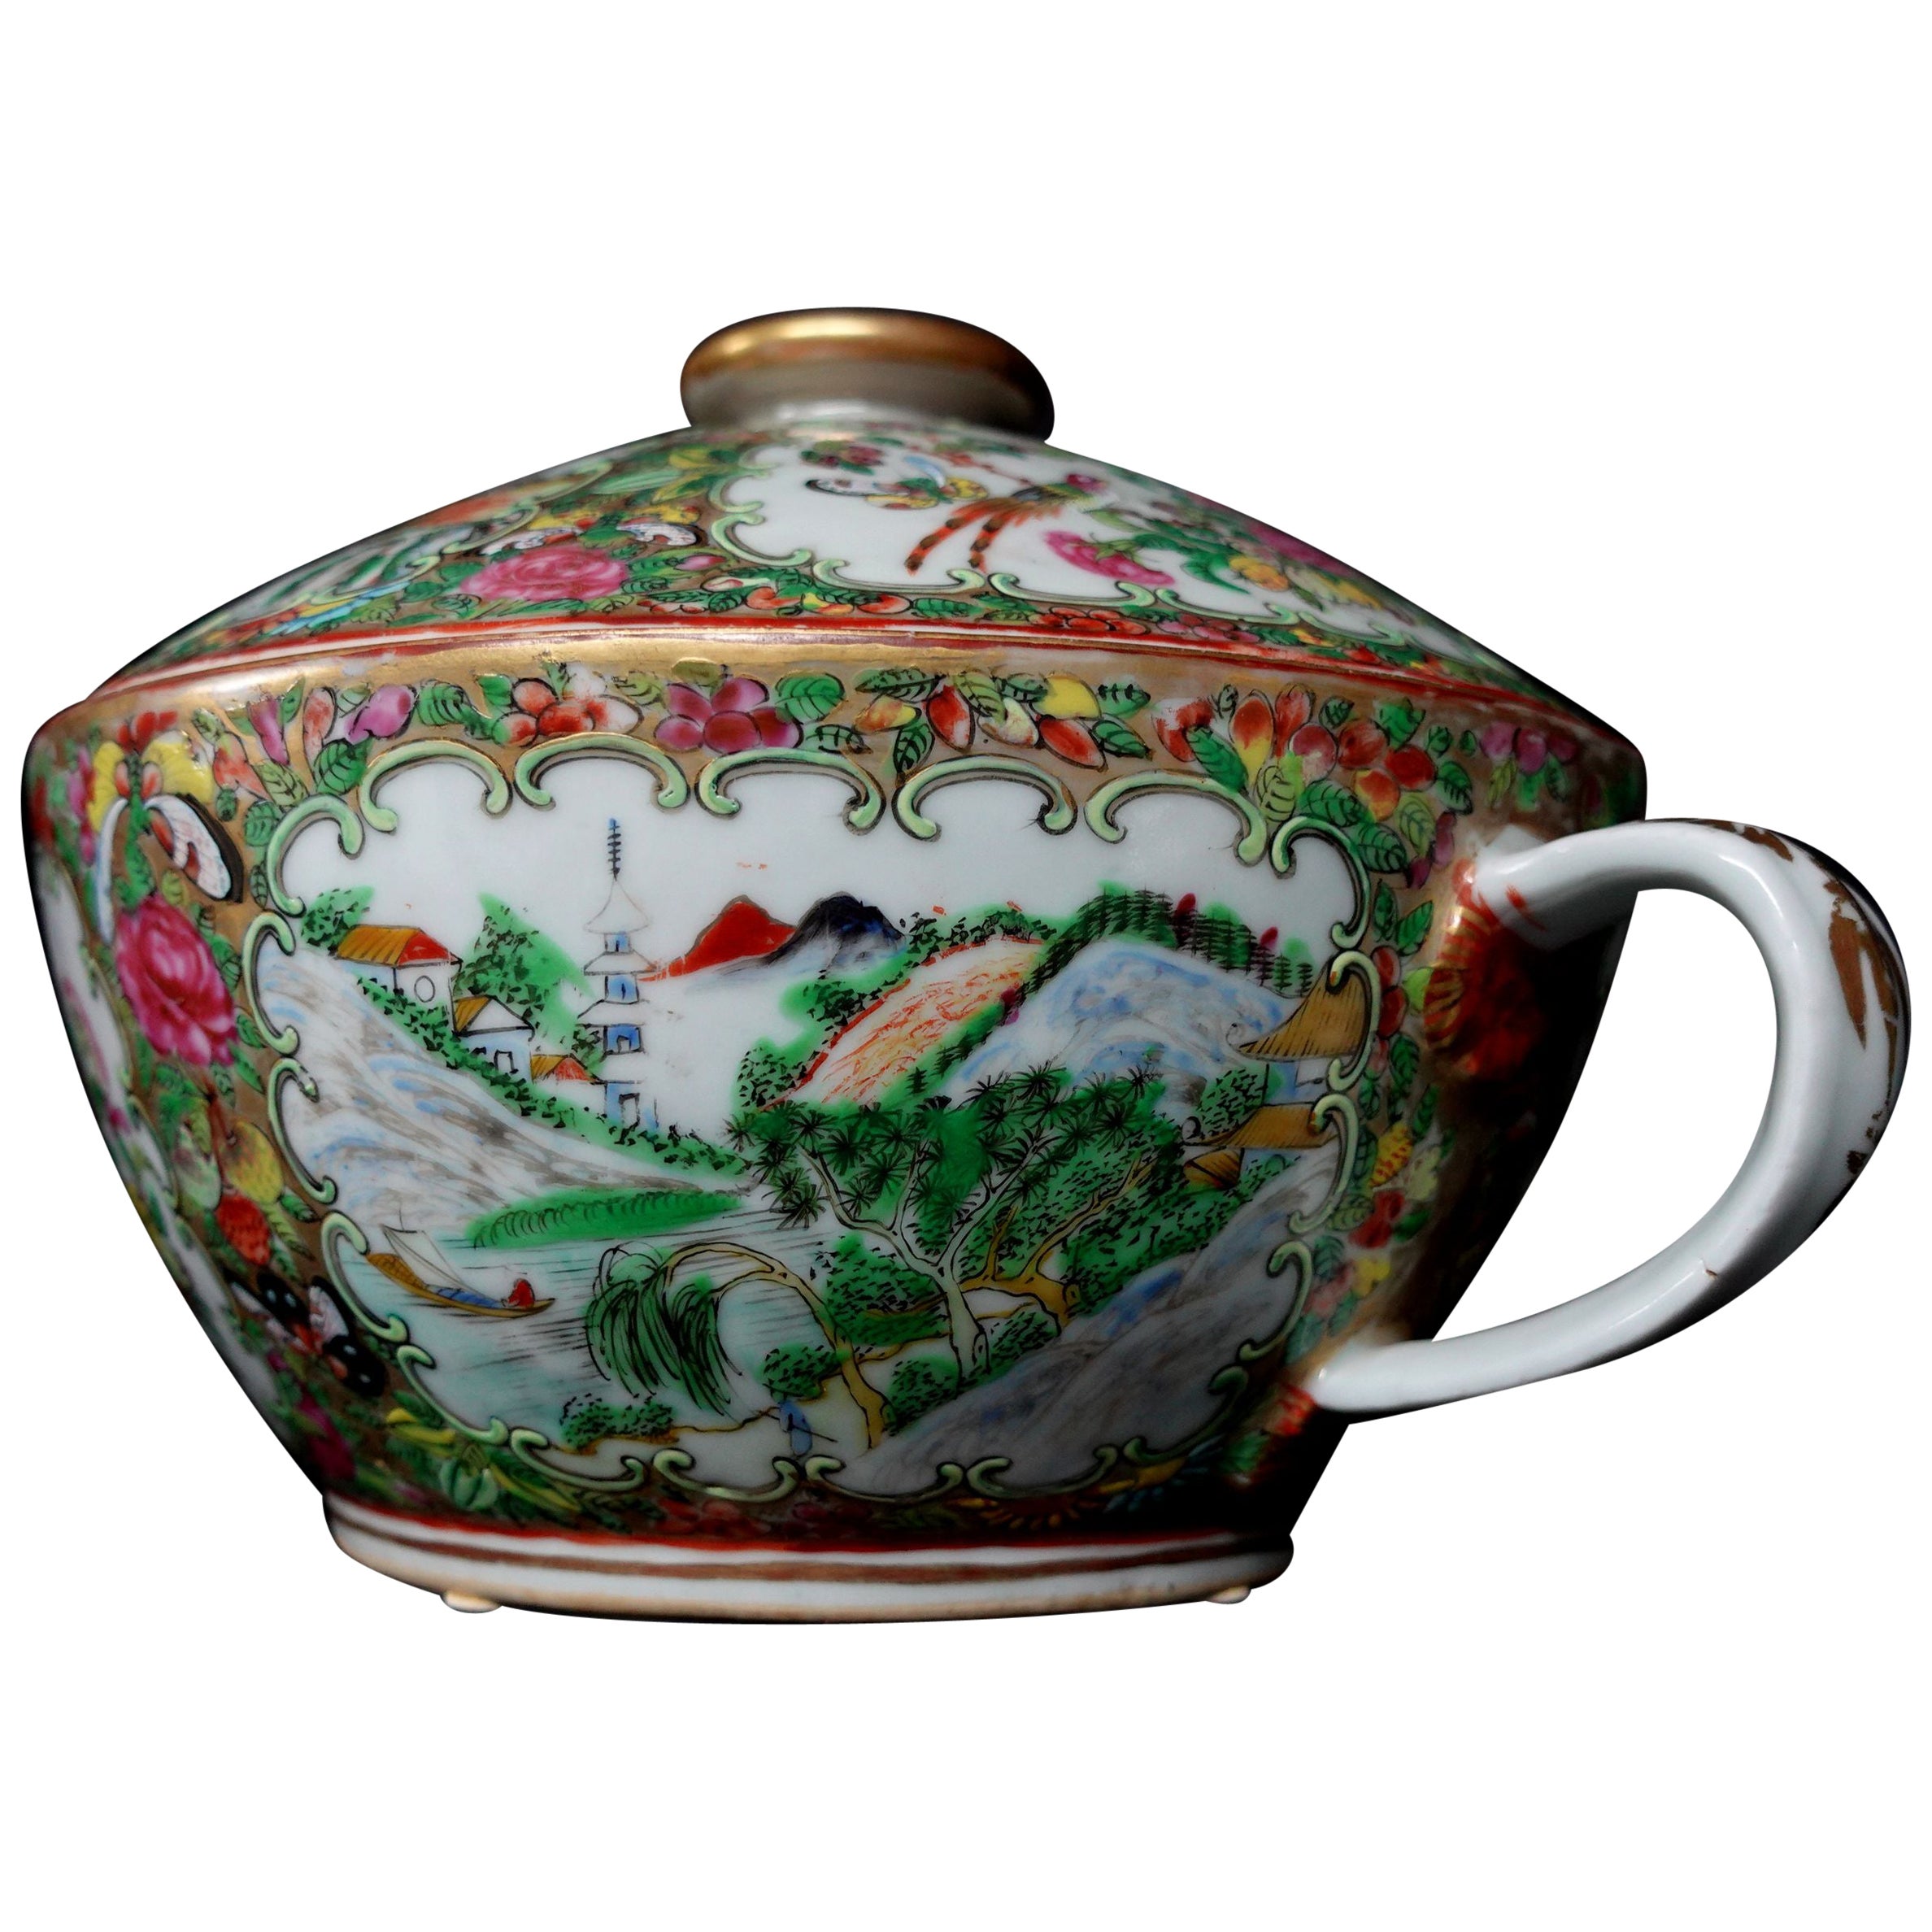 Chinesische Deckelschale mit Rosenmedaillon und Exportdeckel aus dem 19. Jahrhundert